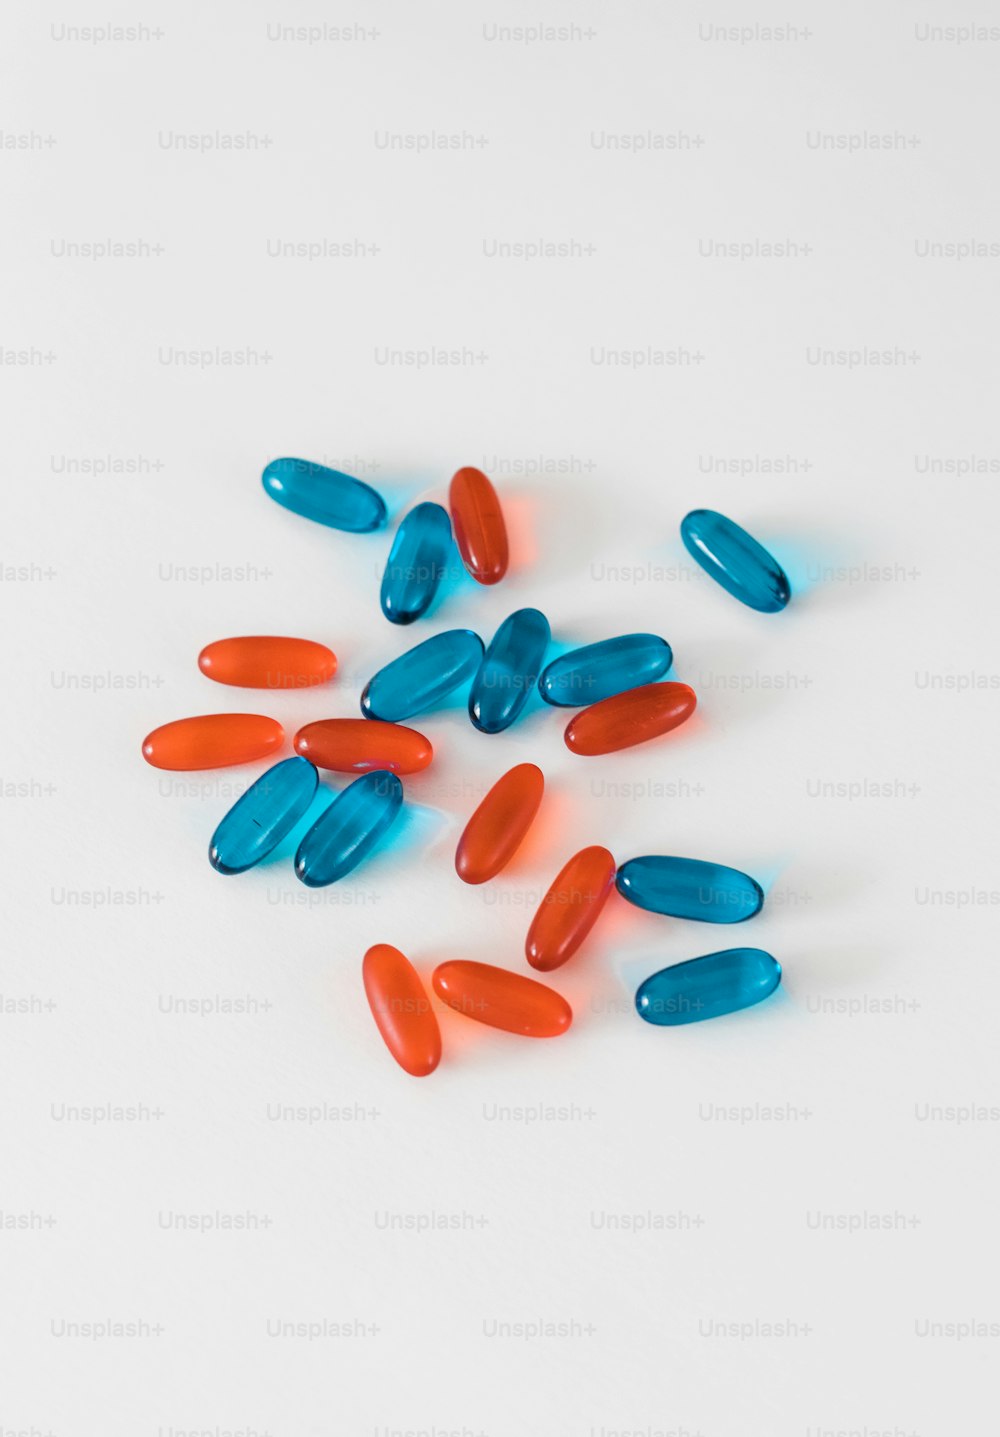 45,628+ Fotos de la píldora azul  Descargar imágenes gratis en Unsplash